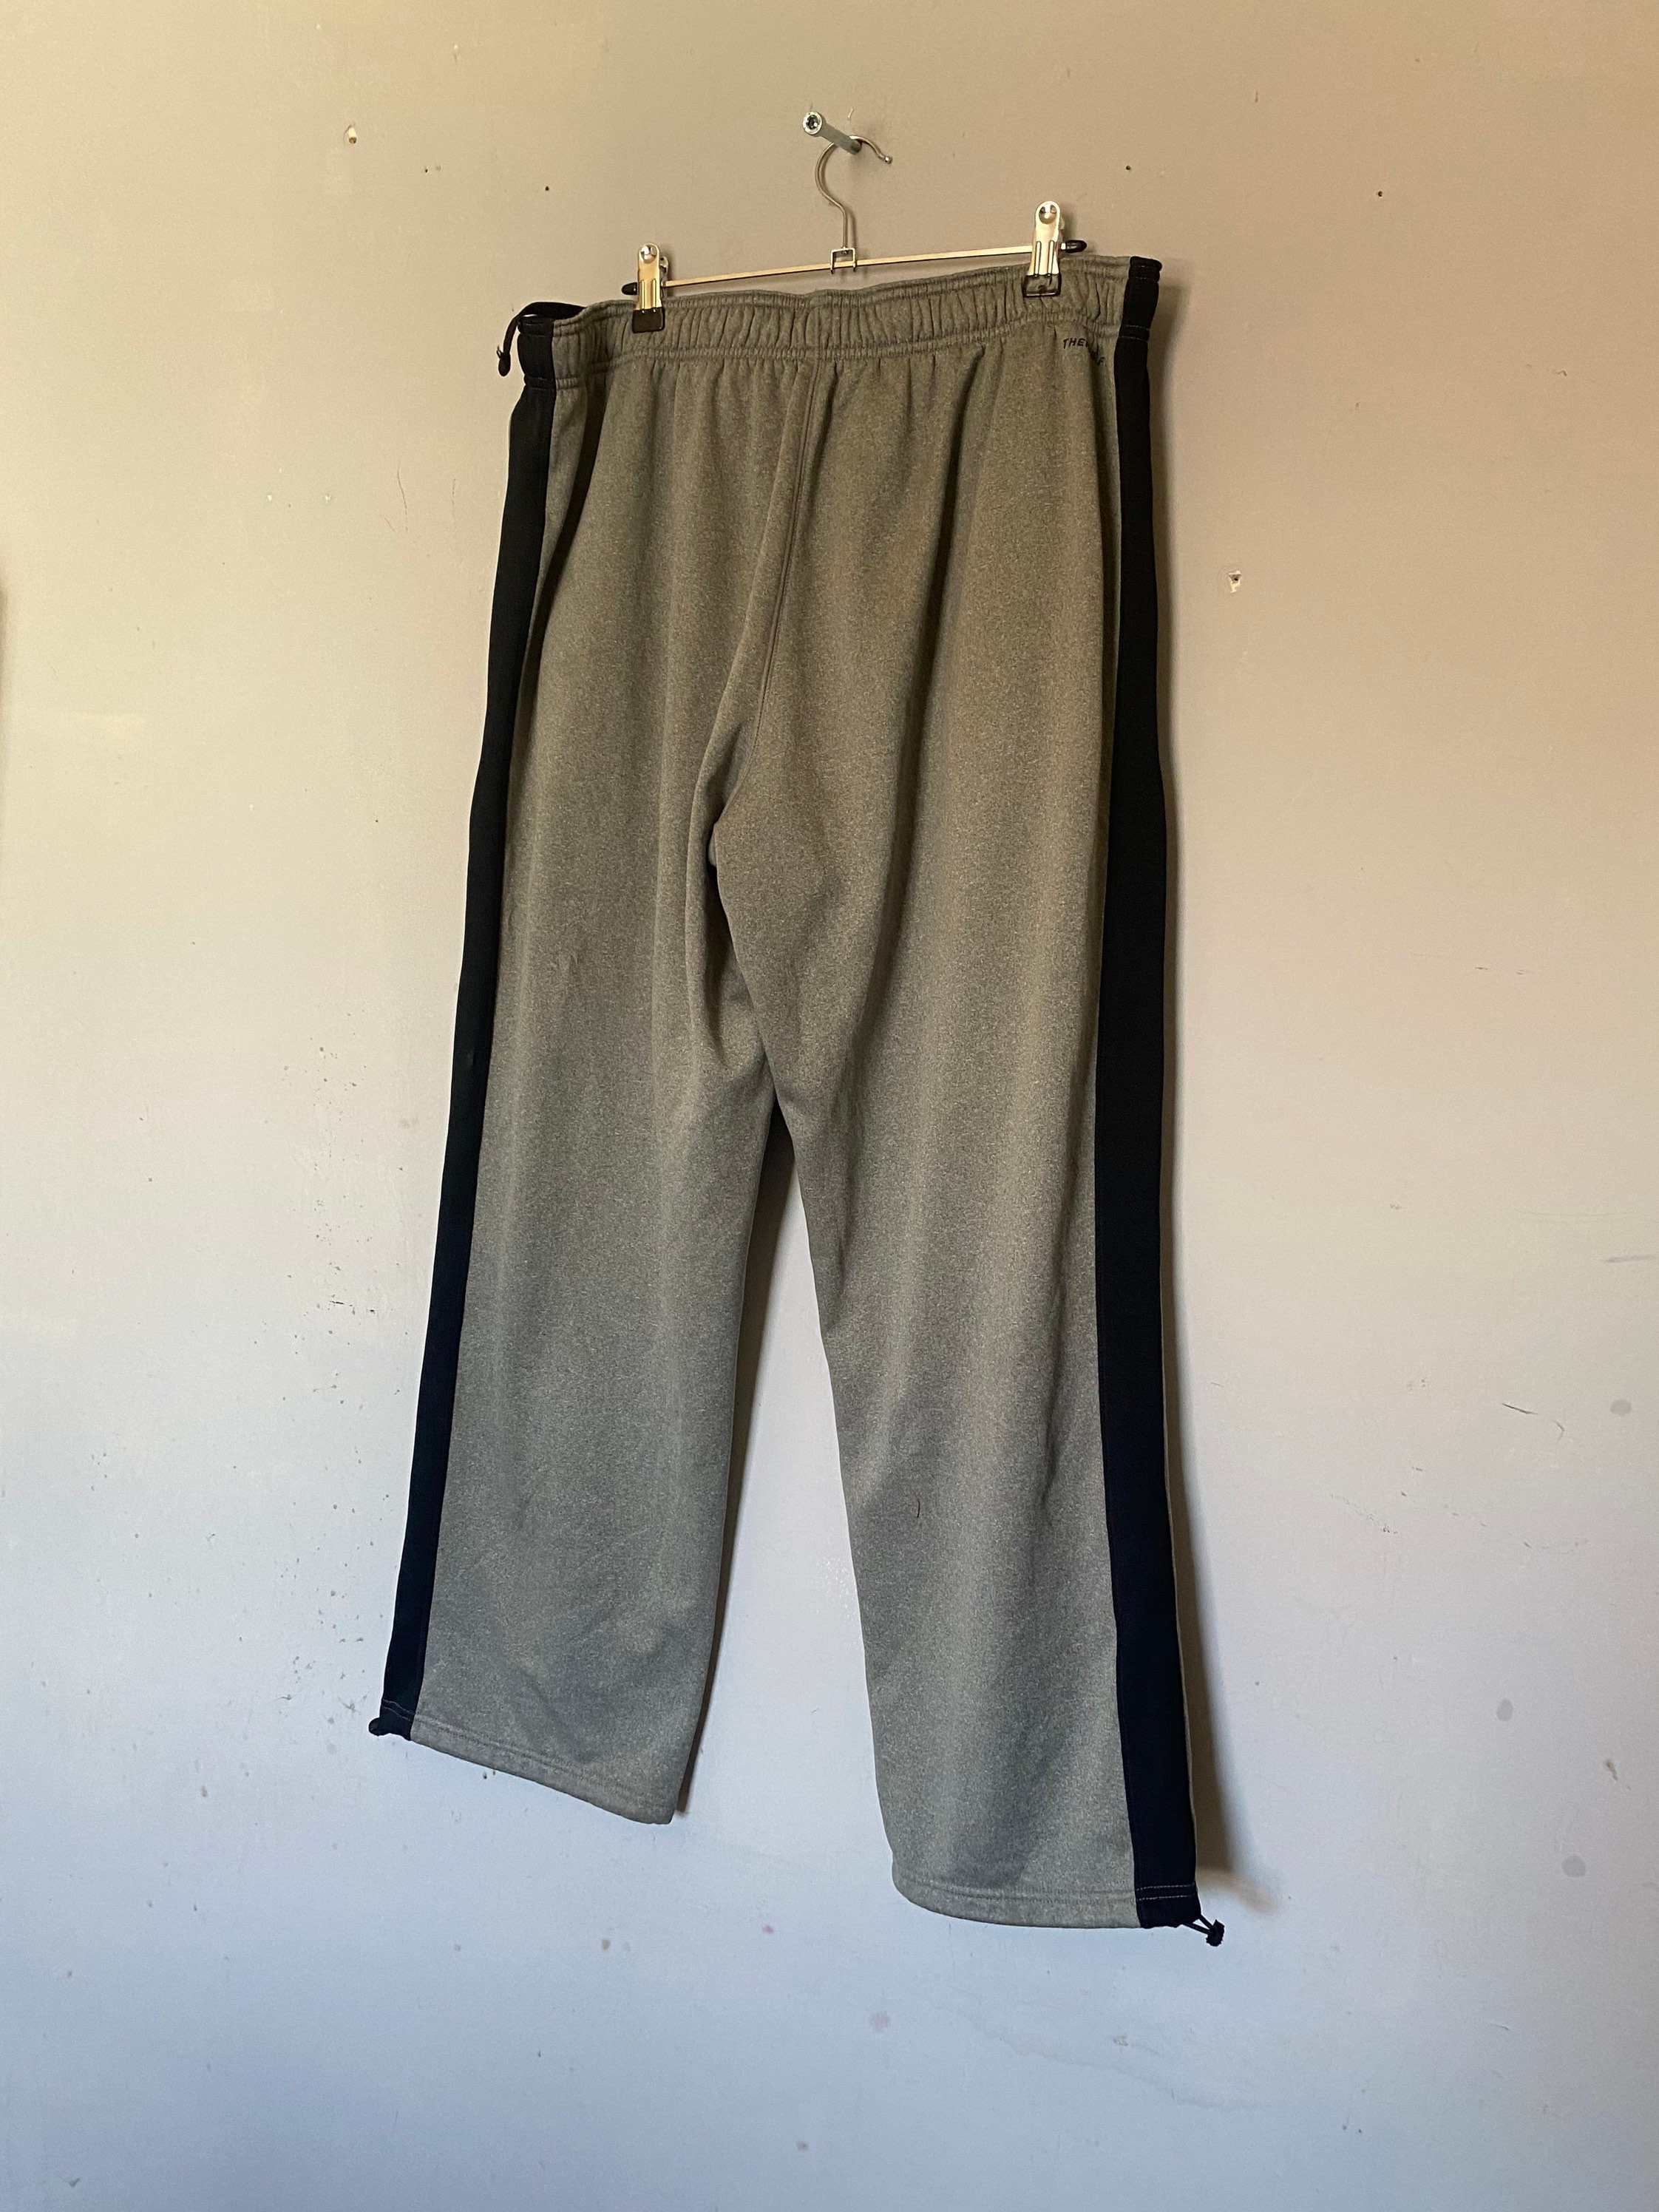 Vintage Nike Pants / Sweat / Track Suit Pants / Jogging | Etsy